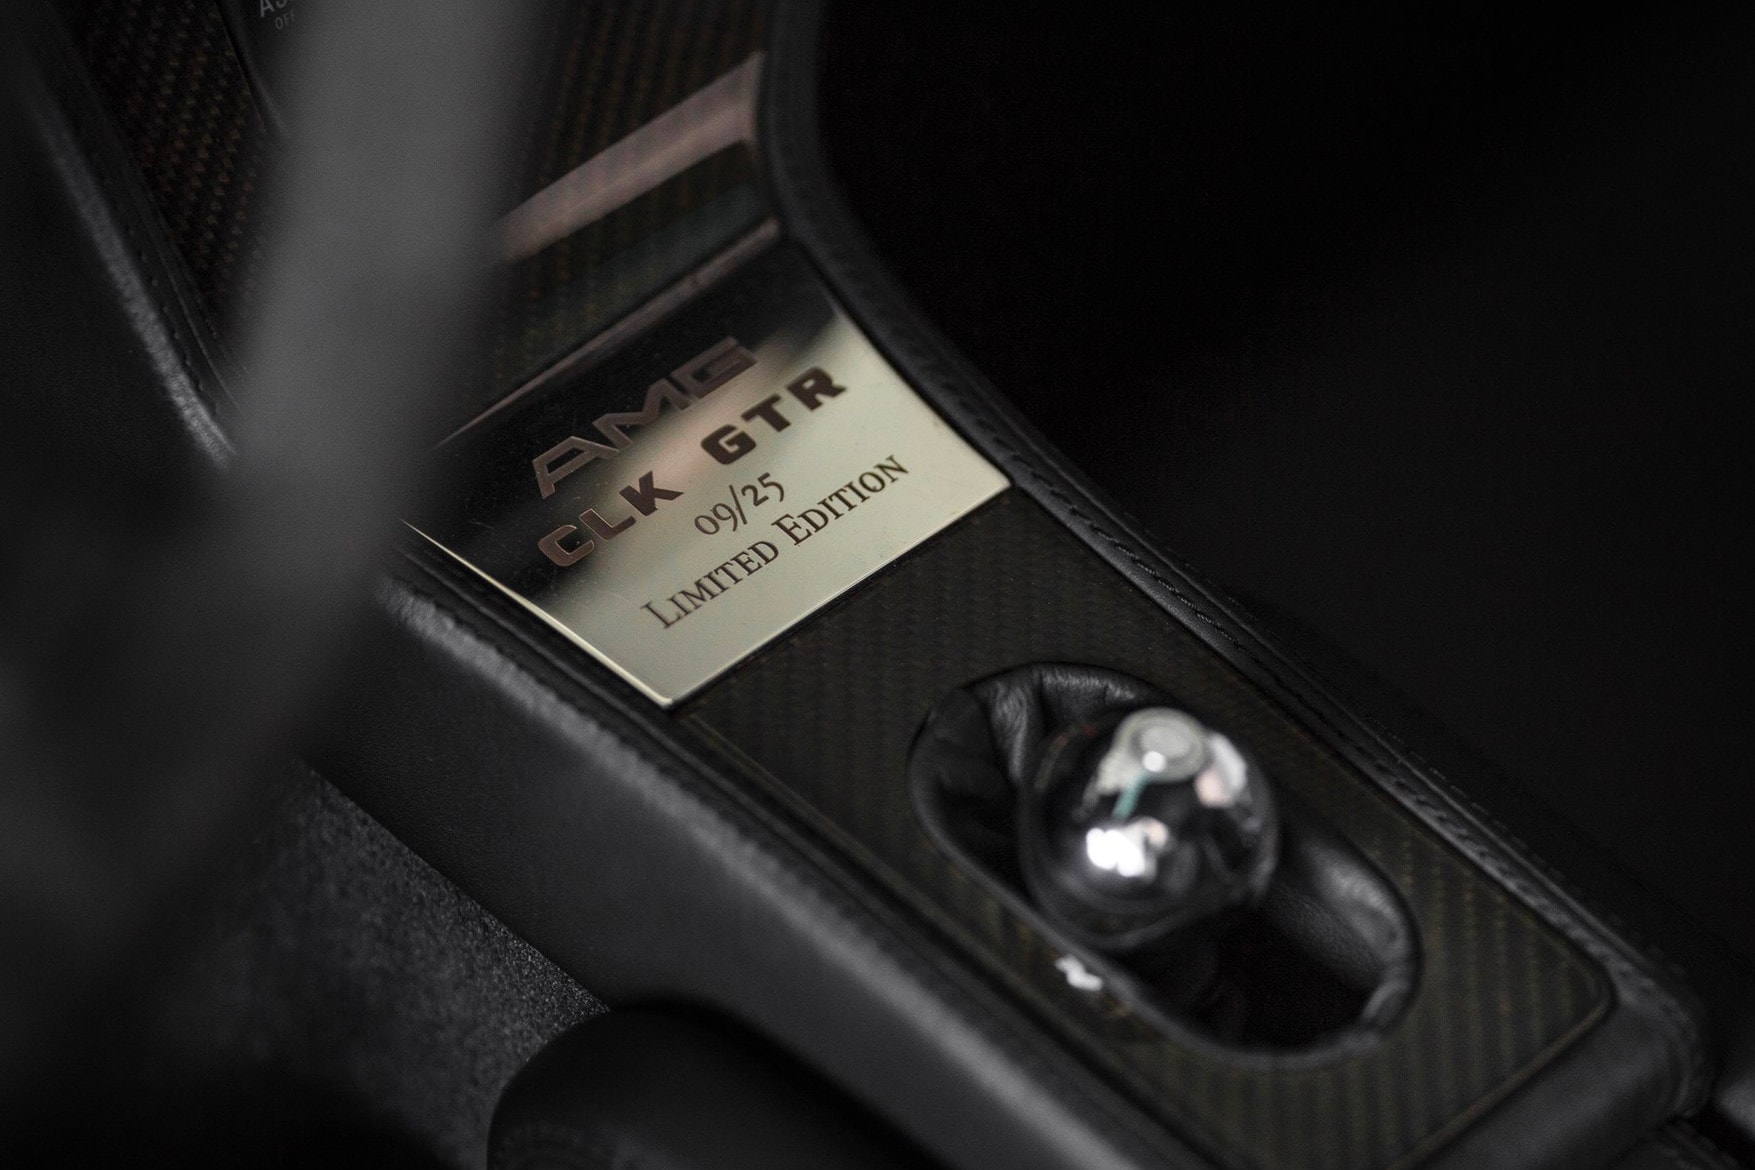 1998 年產之跑車 Mercedes-Benz AMG CLK GTR 將公開拍賣